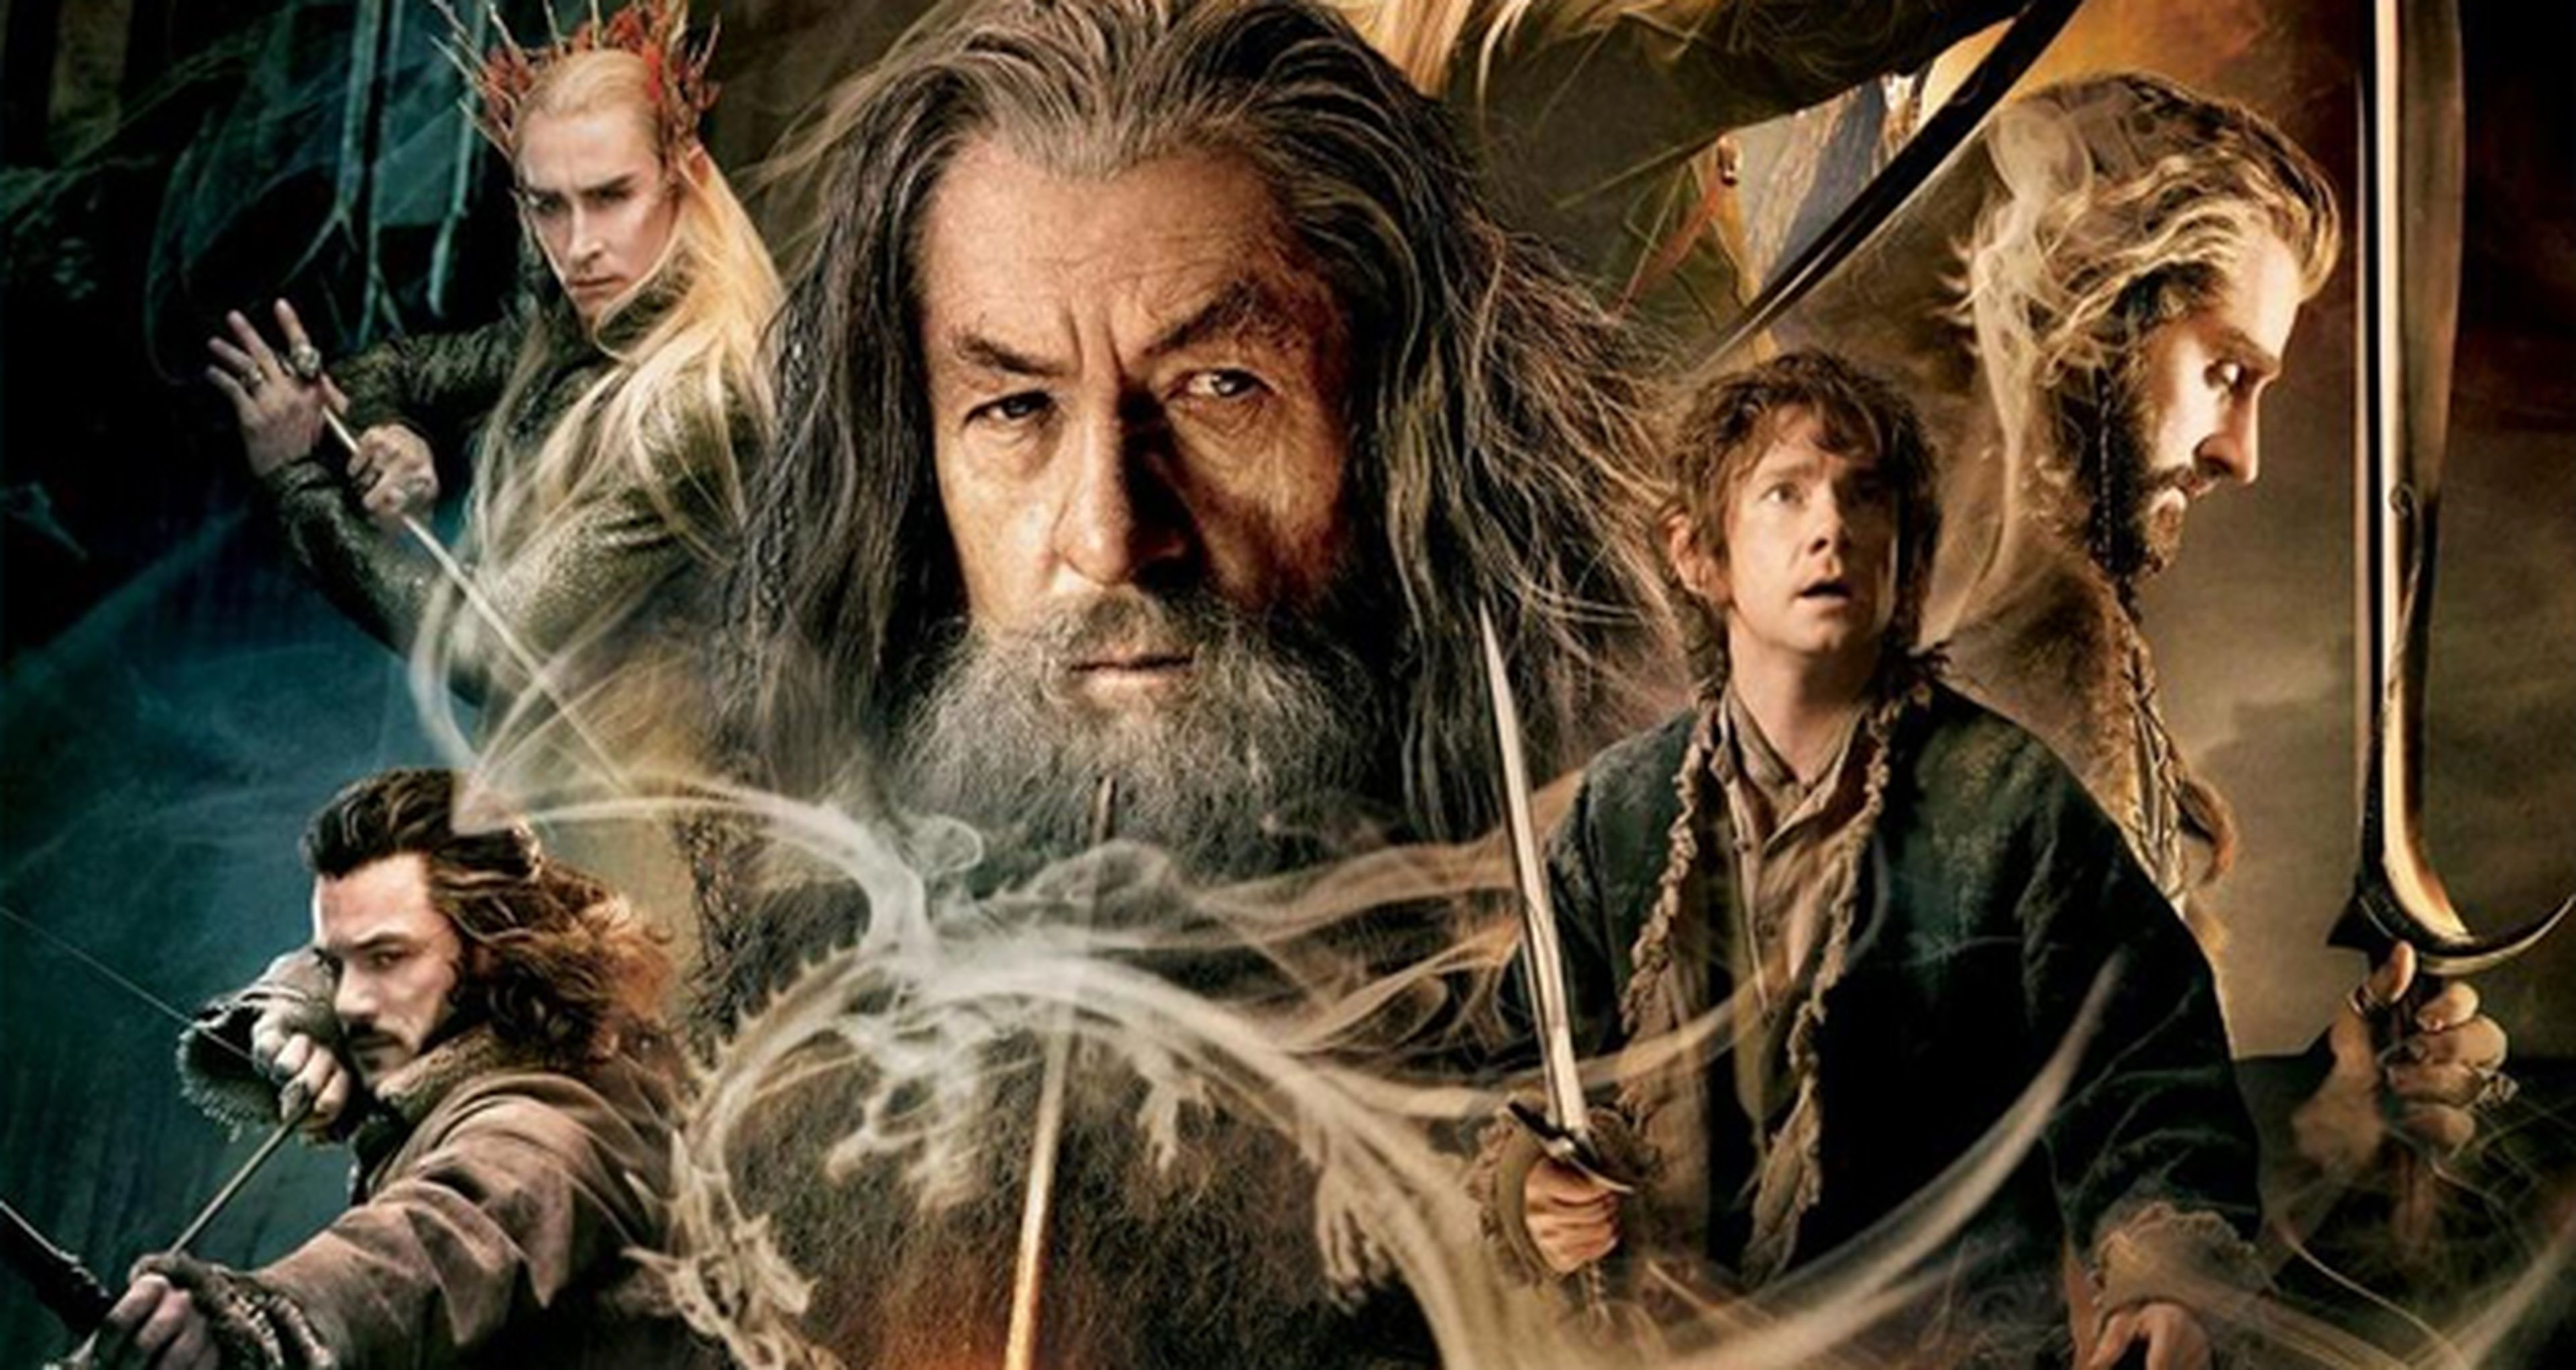 Crítica de la película El Hobbit: La desolación de Smaug